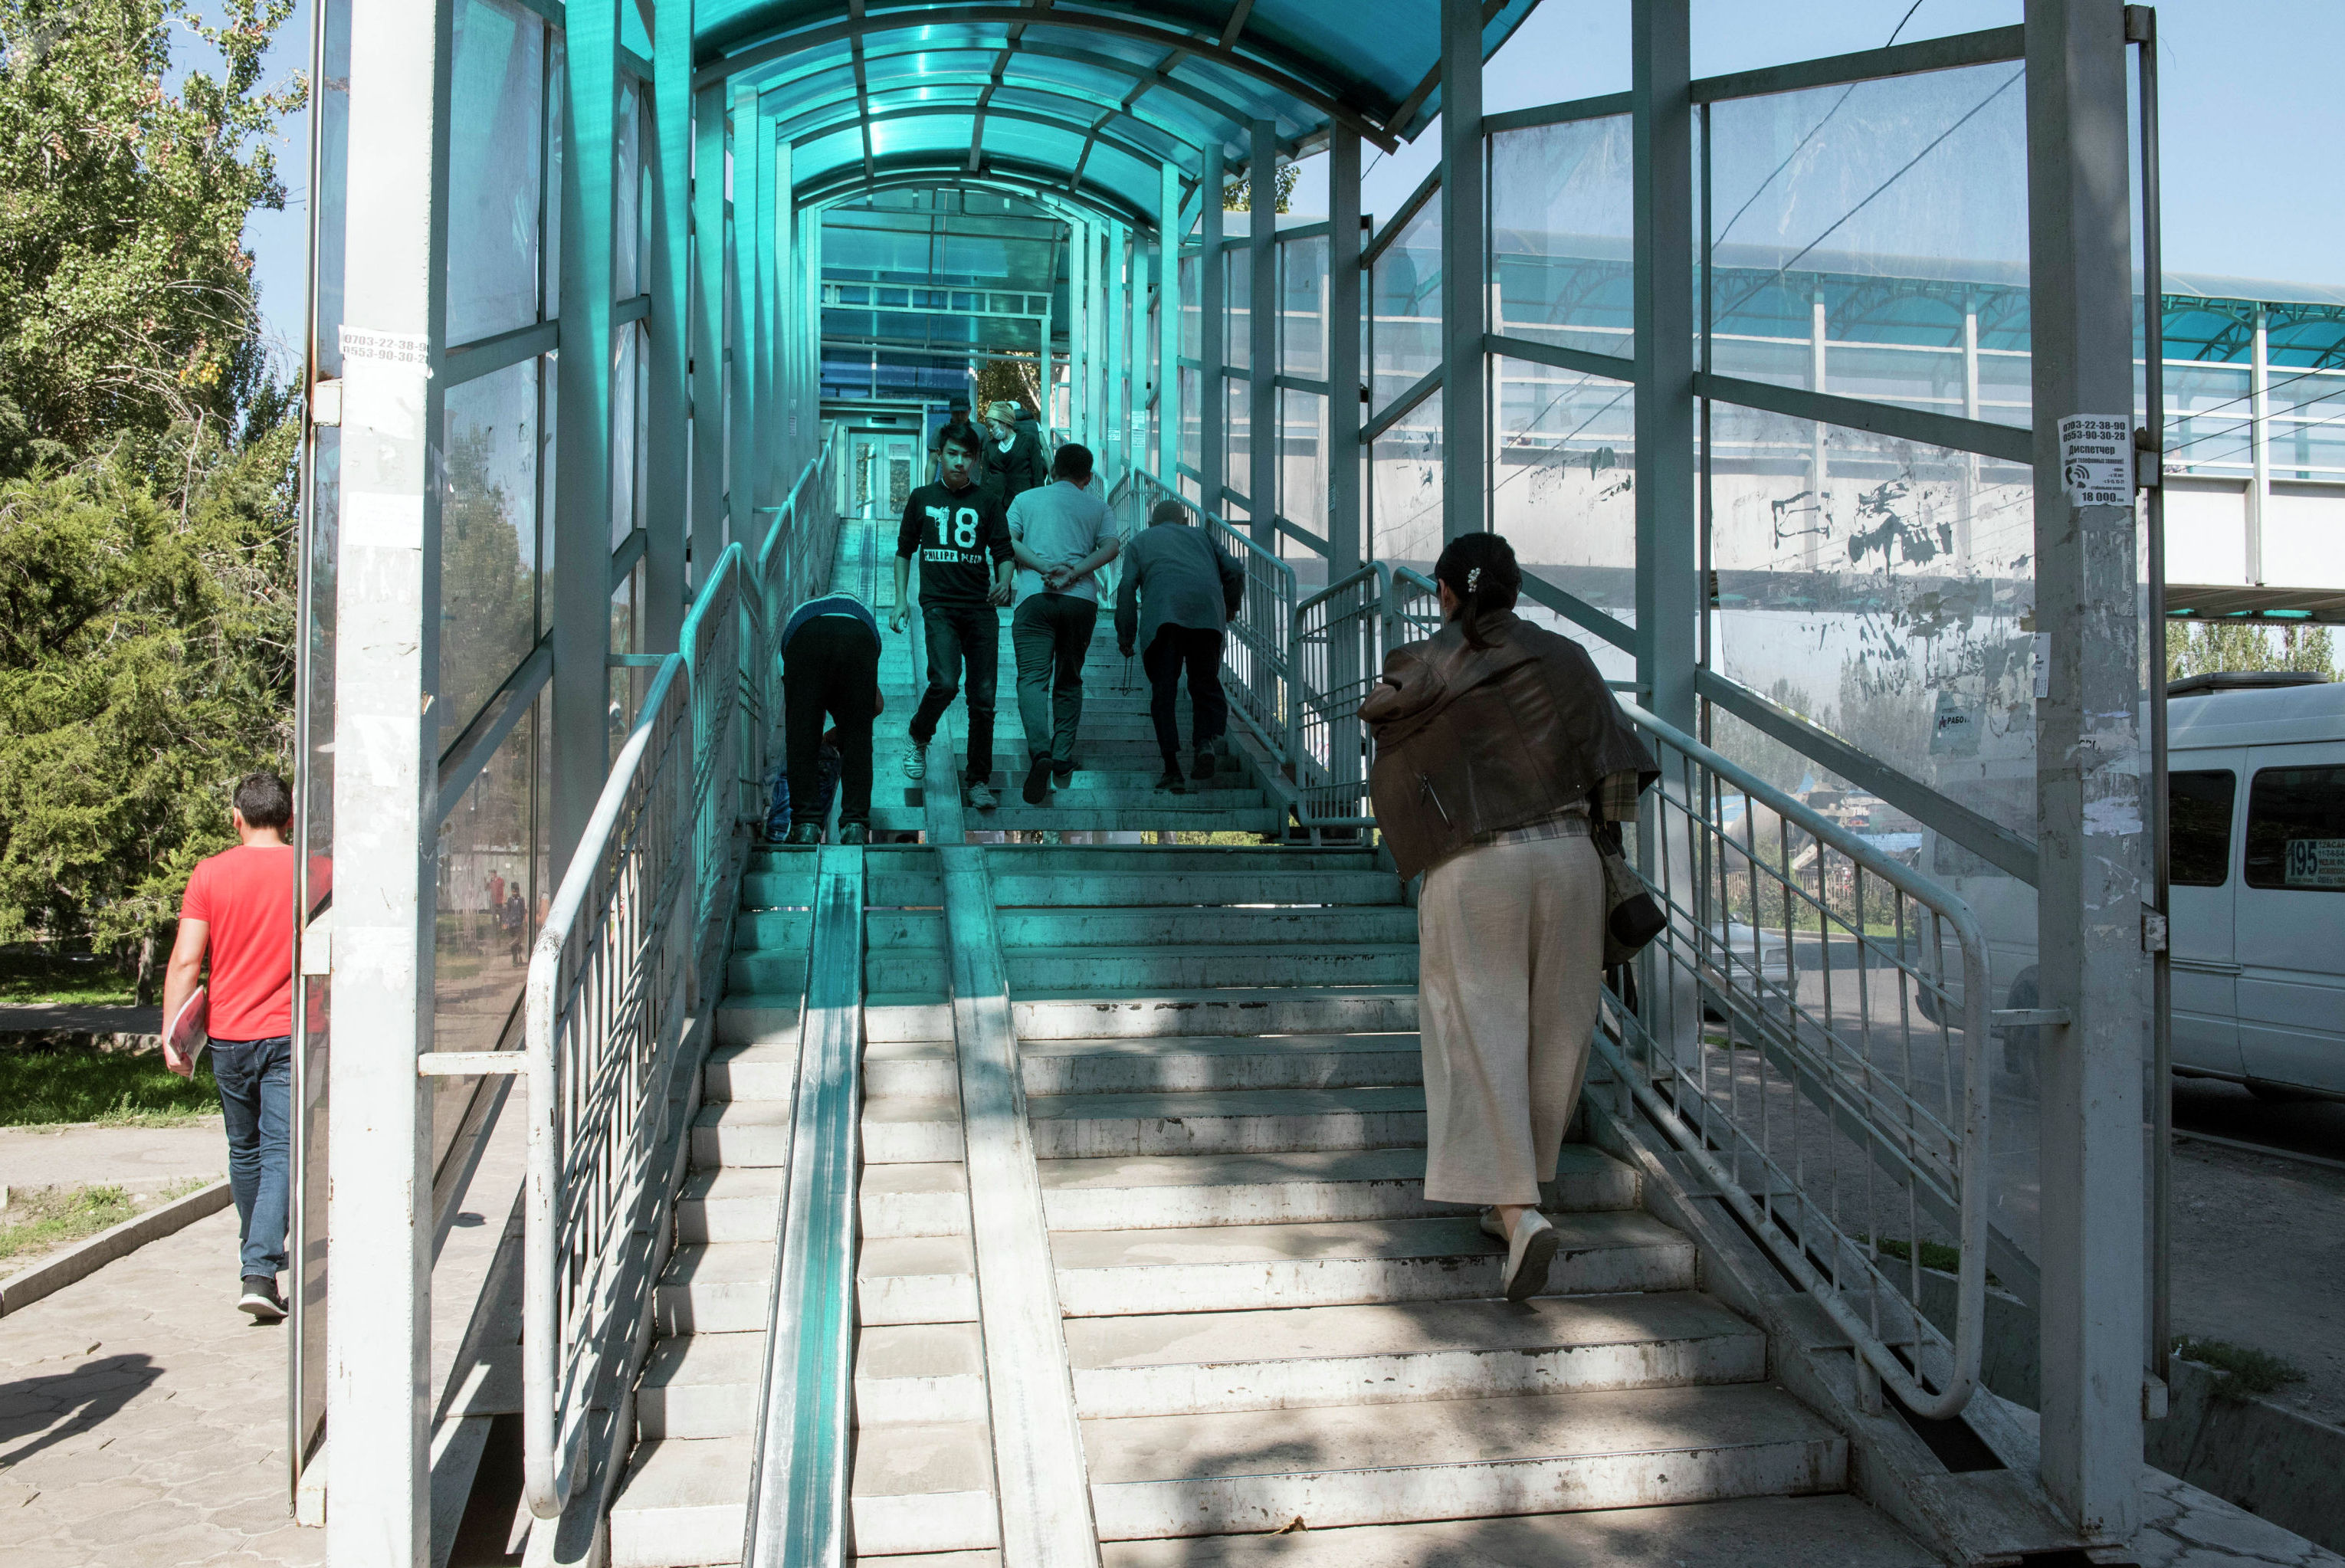 ЛОВЗ у неработающего лифта в надземном переходе в Бишкеке